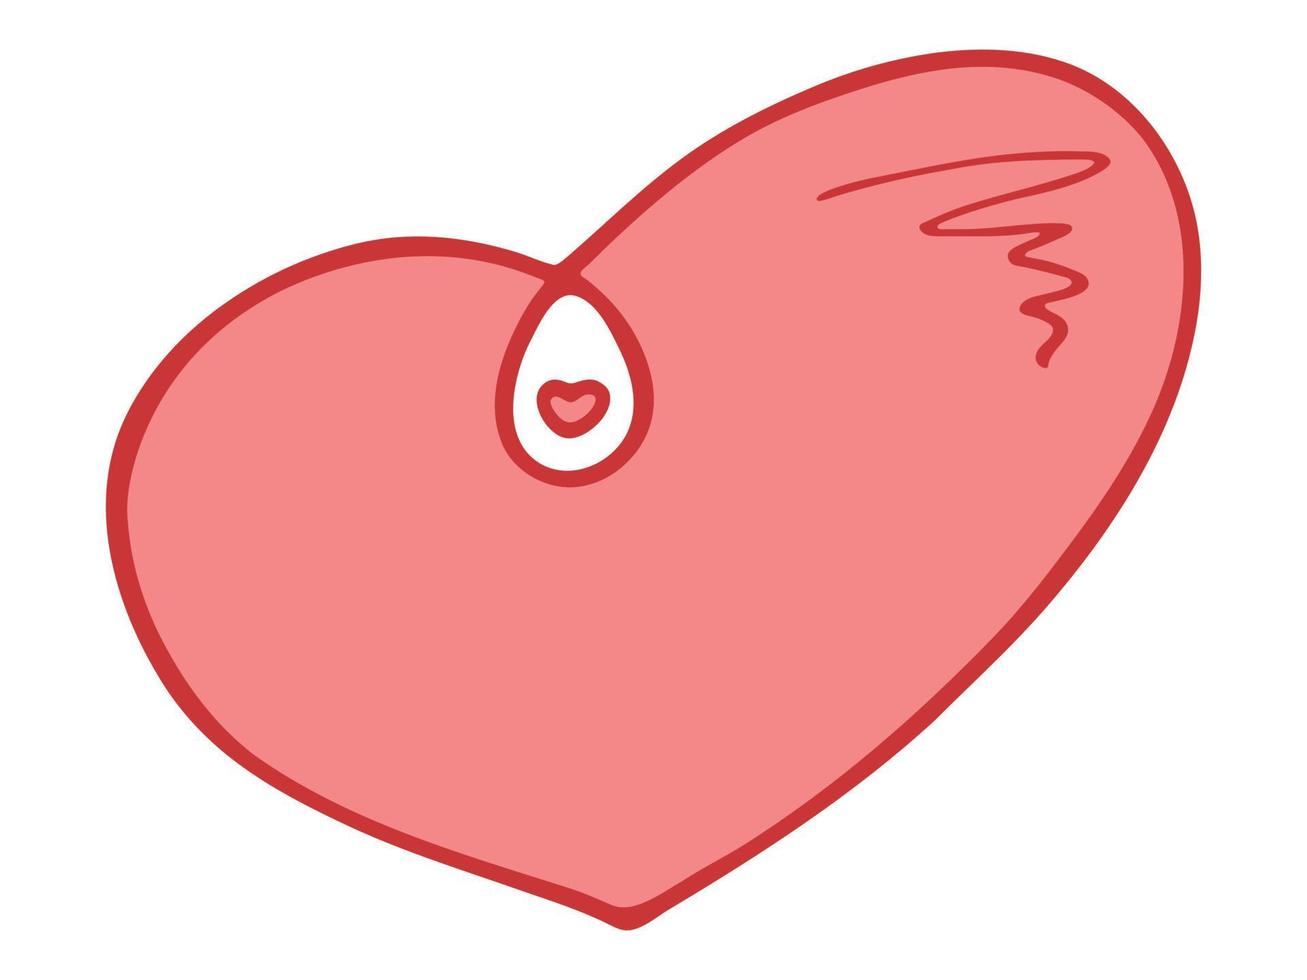 eenvoudige hand getekende hart illustratie geïsoleerd op een witte achtergrond. schattige Valentijnsdag hart doodle. vector